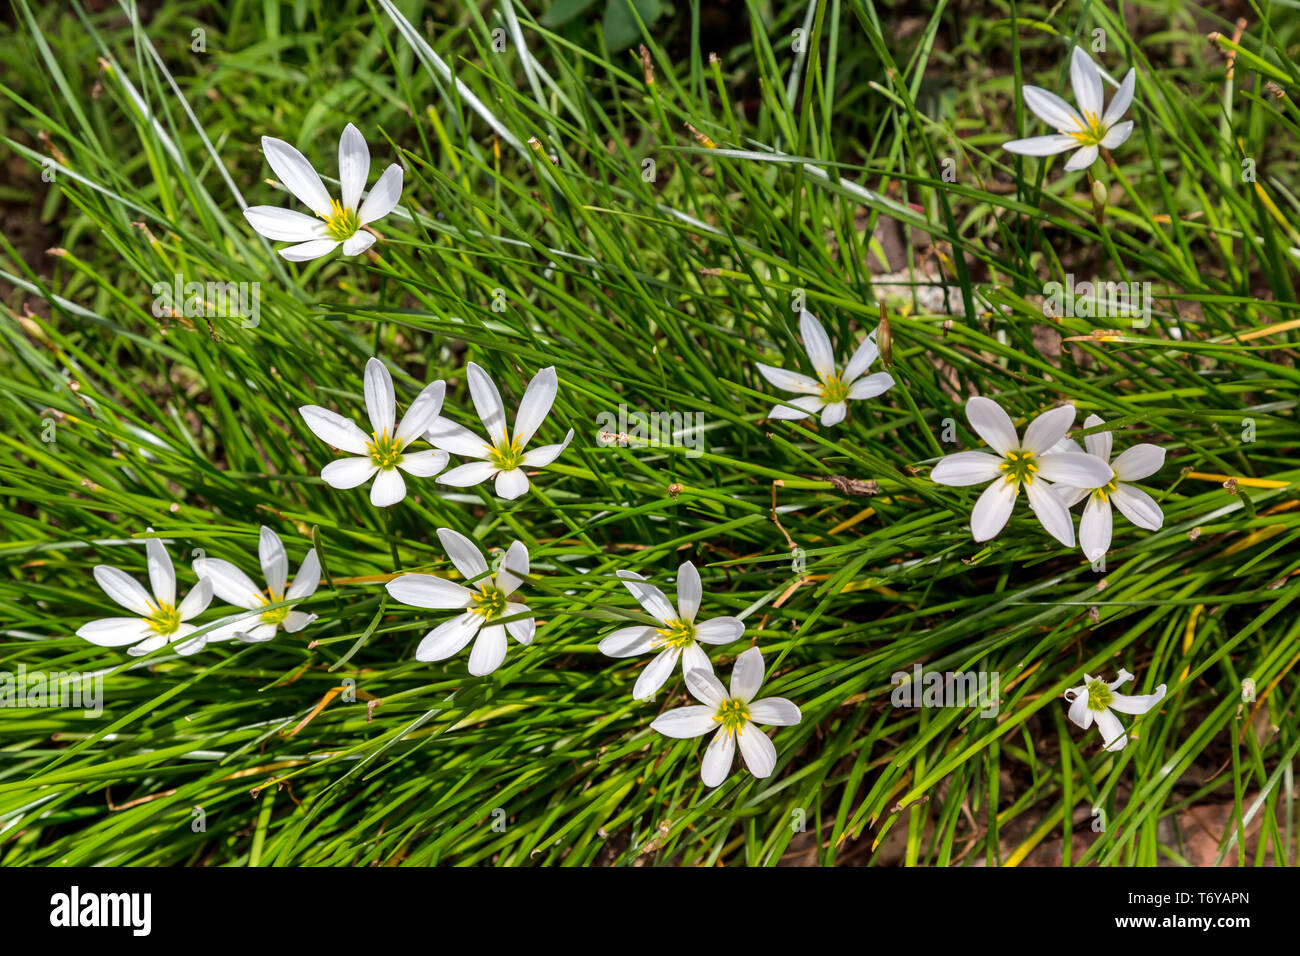 White star shaped flowers of ornithogalum Stock Photo